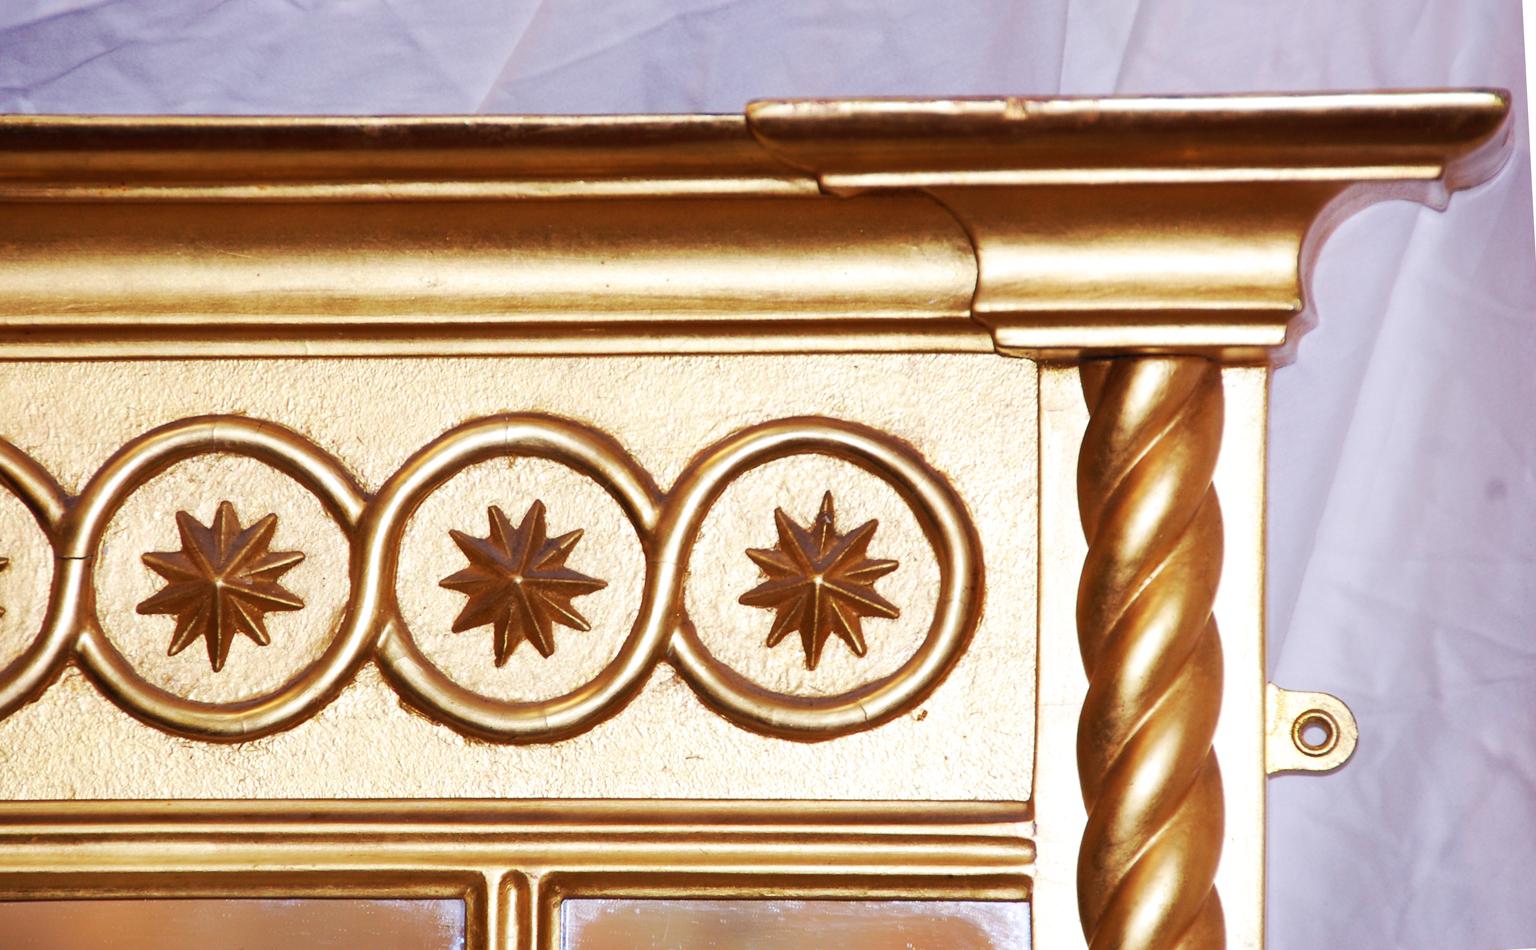 Miroir à trumeau en bois doré de style Régence anglaise de forme tripartite avec des colonnes en torsion d'orge. La frise est une série d'étoiles répétées dans des cercles sous une corniche audacieuse. La corniche, la frise et les colonnes confèrent